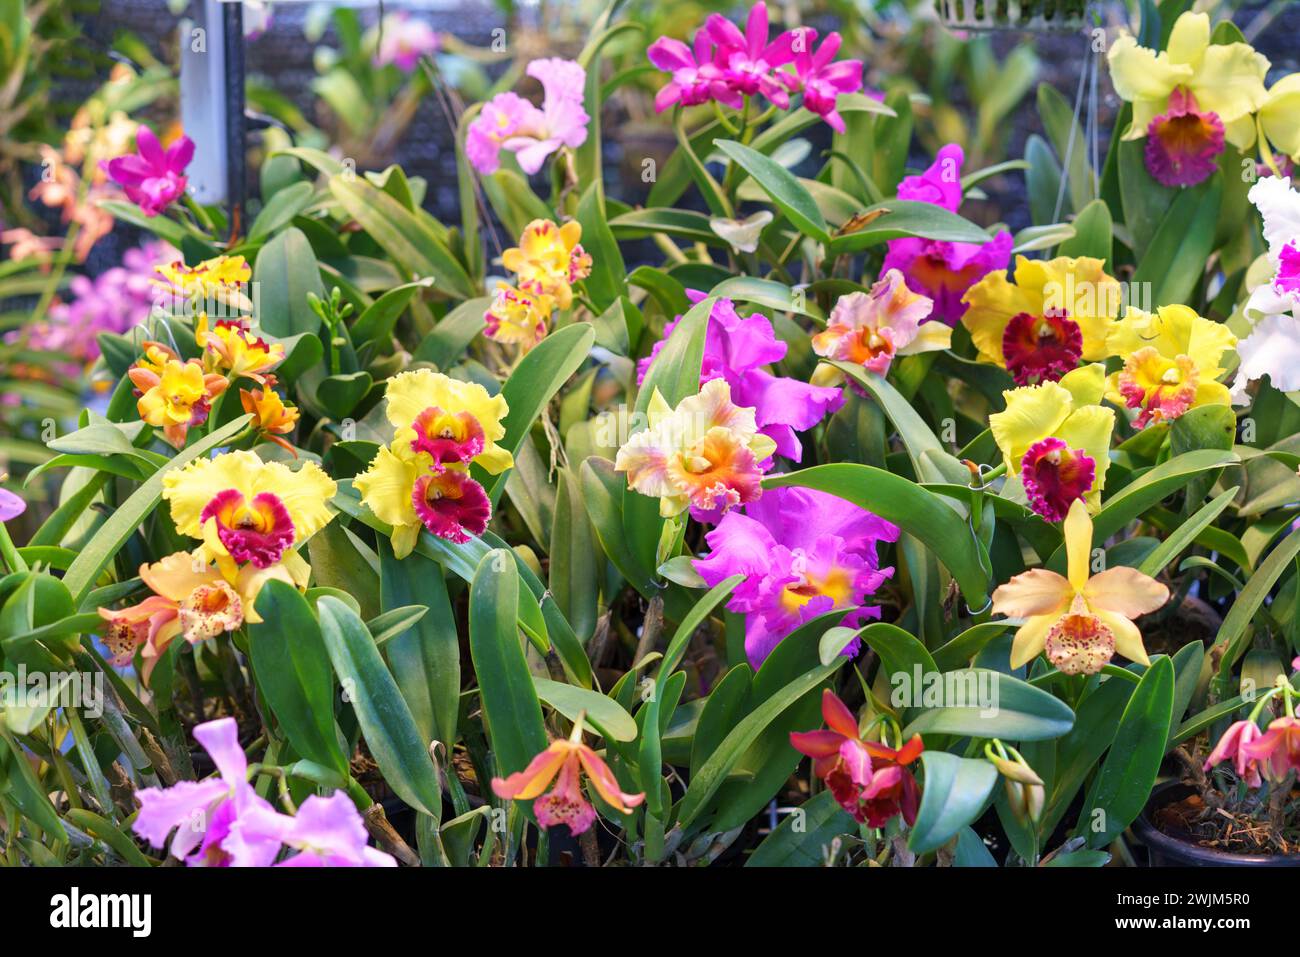 Une superbe collection d'orchidées Cattleya dans une variété de couleurs vibrantes, en pleine floraison dans un cadre de serre luxuriant Banque D'Images